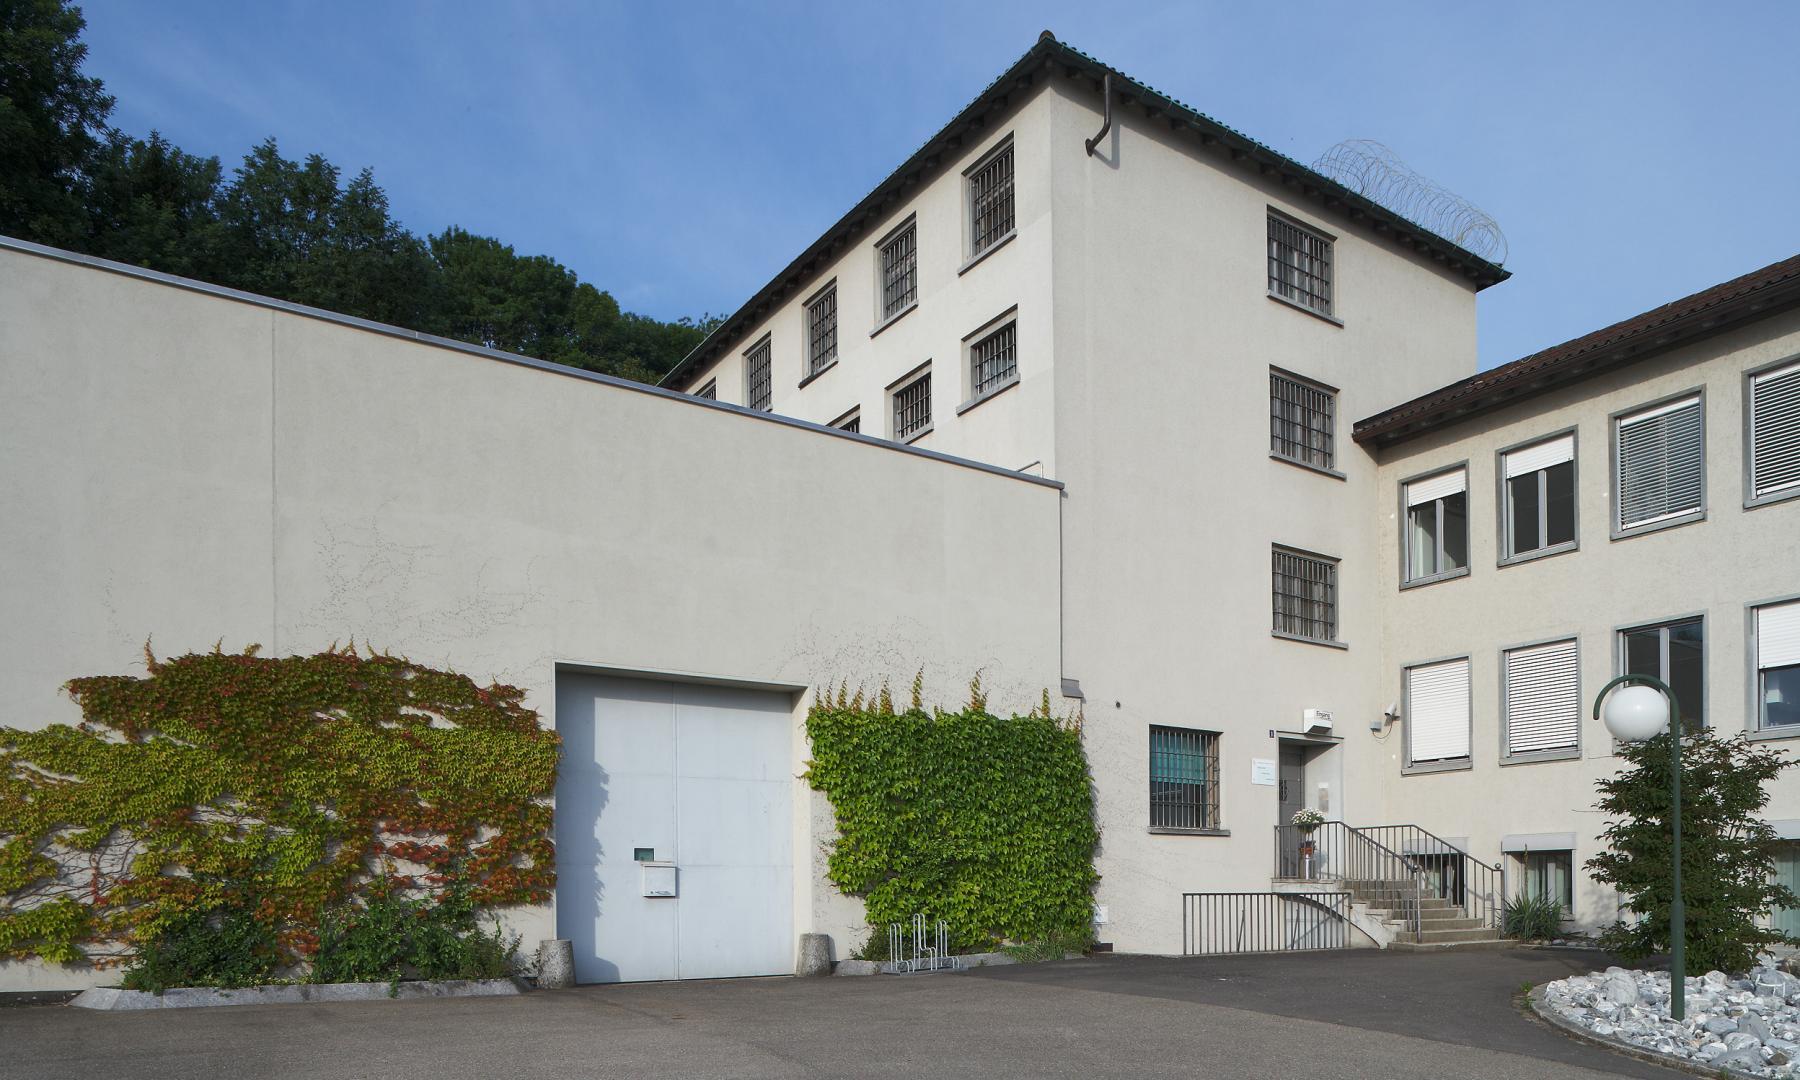 Horgen Prison Kanton Zurich